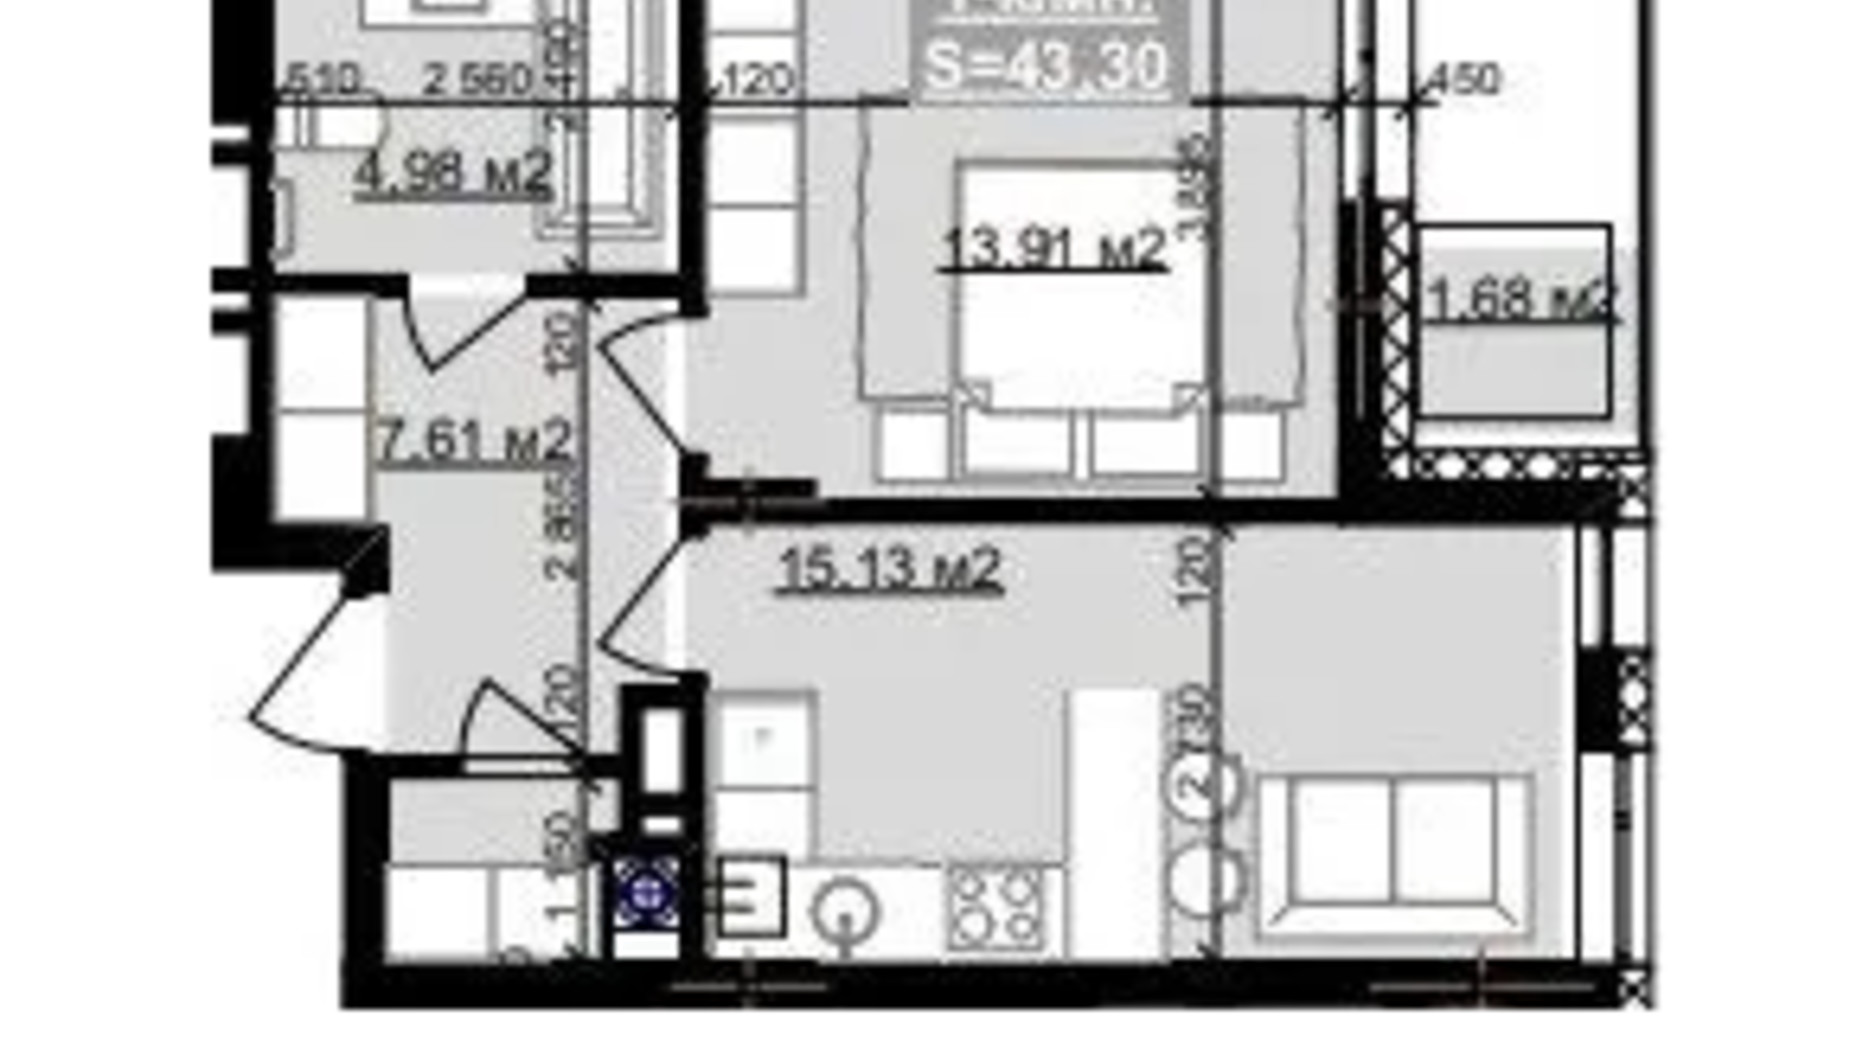 Планування 1-кімнатної квартири в ЖК Паркове містечко (7 черга) 43.3 м², фото 653517